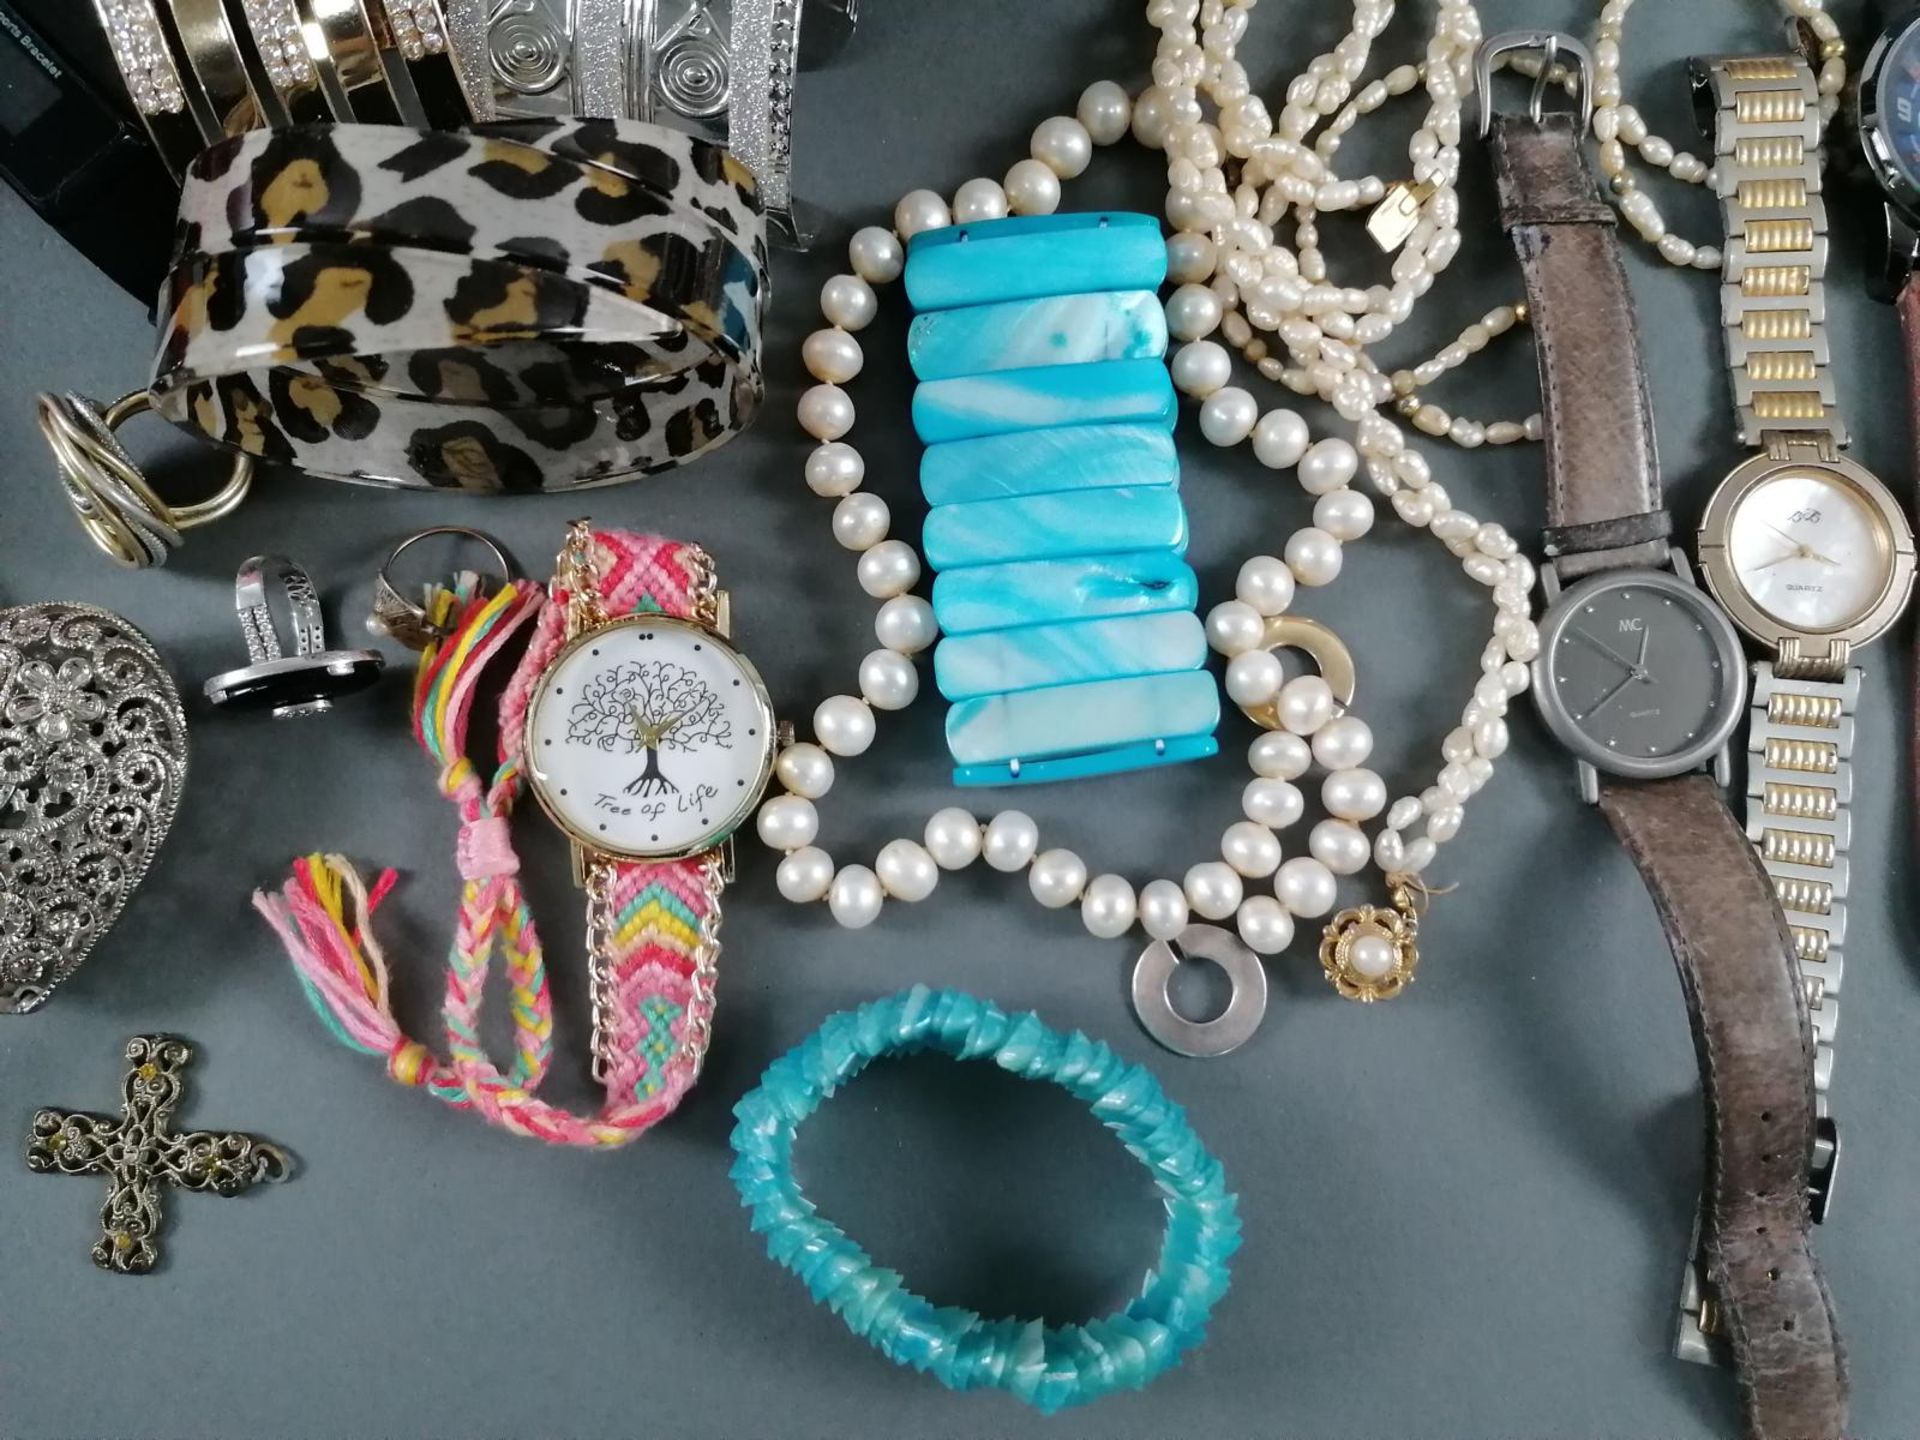 Großes Konvolut Schmuck, Armbanduhren und Modeschmuck im Koffer - Bild 4 aus 11